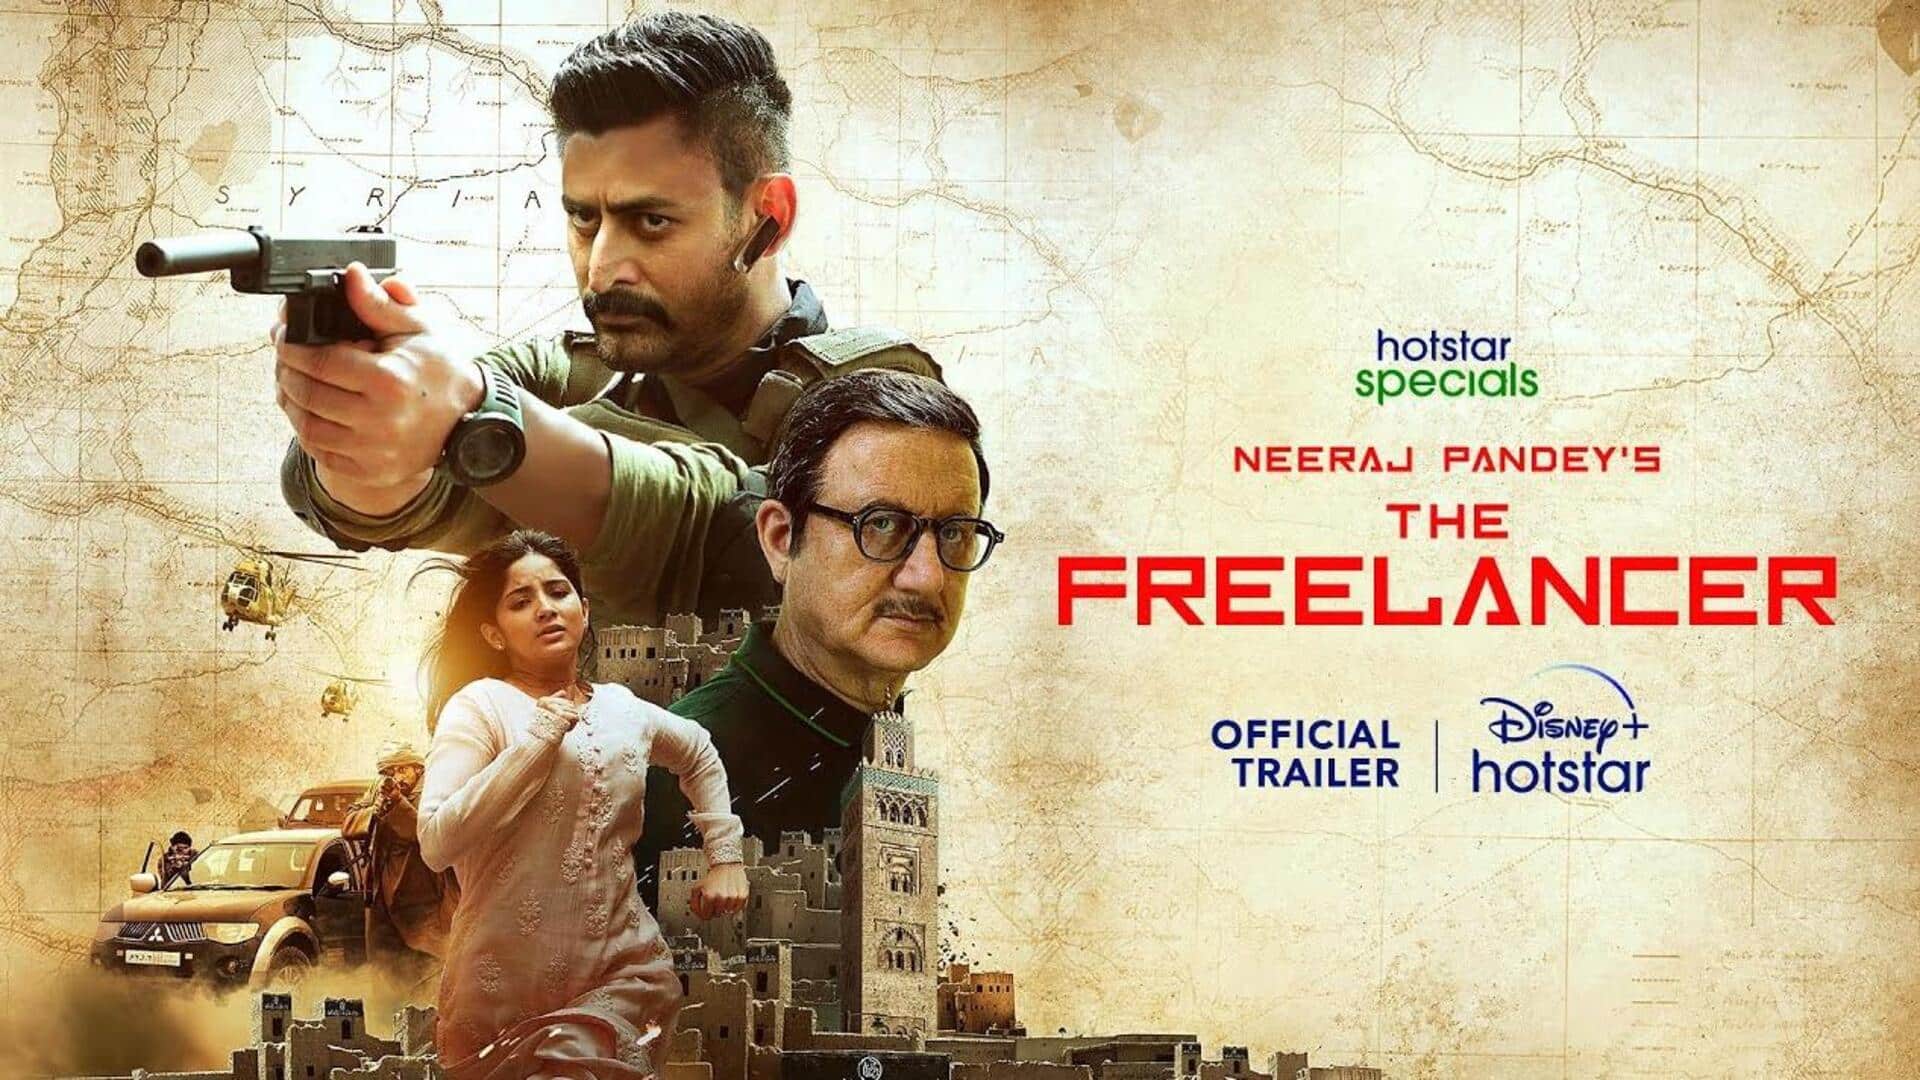 Mohit Raina's rugged avatar in 'The Freelancer' trailer looks promising